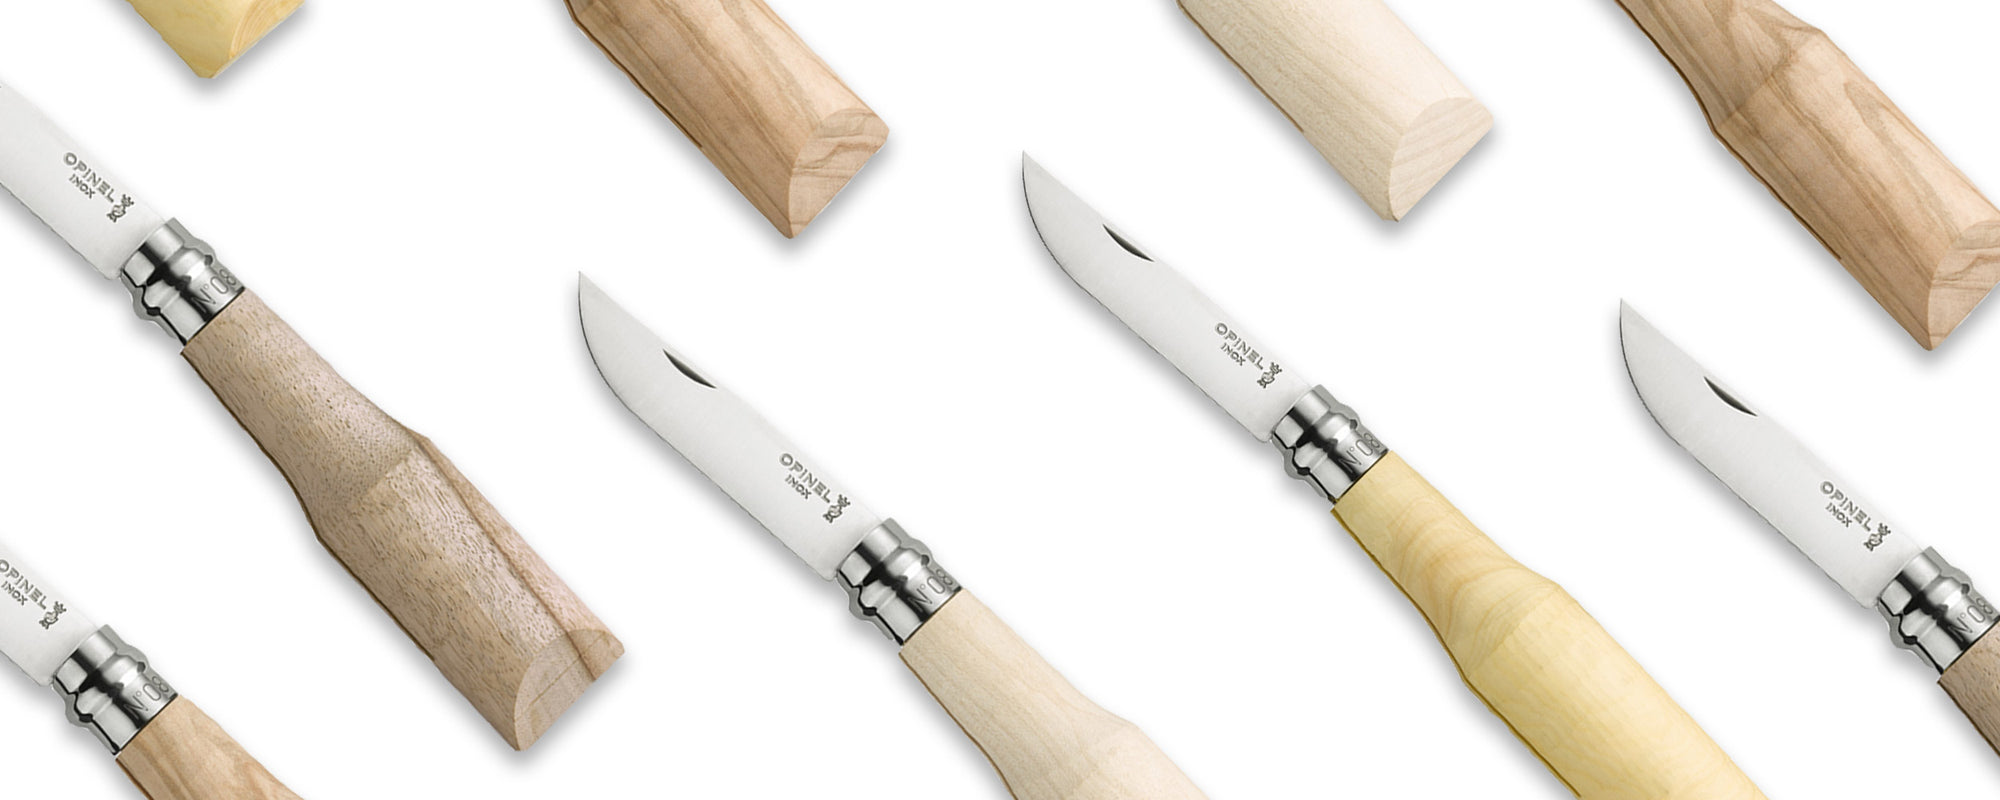 Basic Whittling Knife Kit » ChippingAway